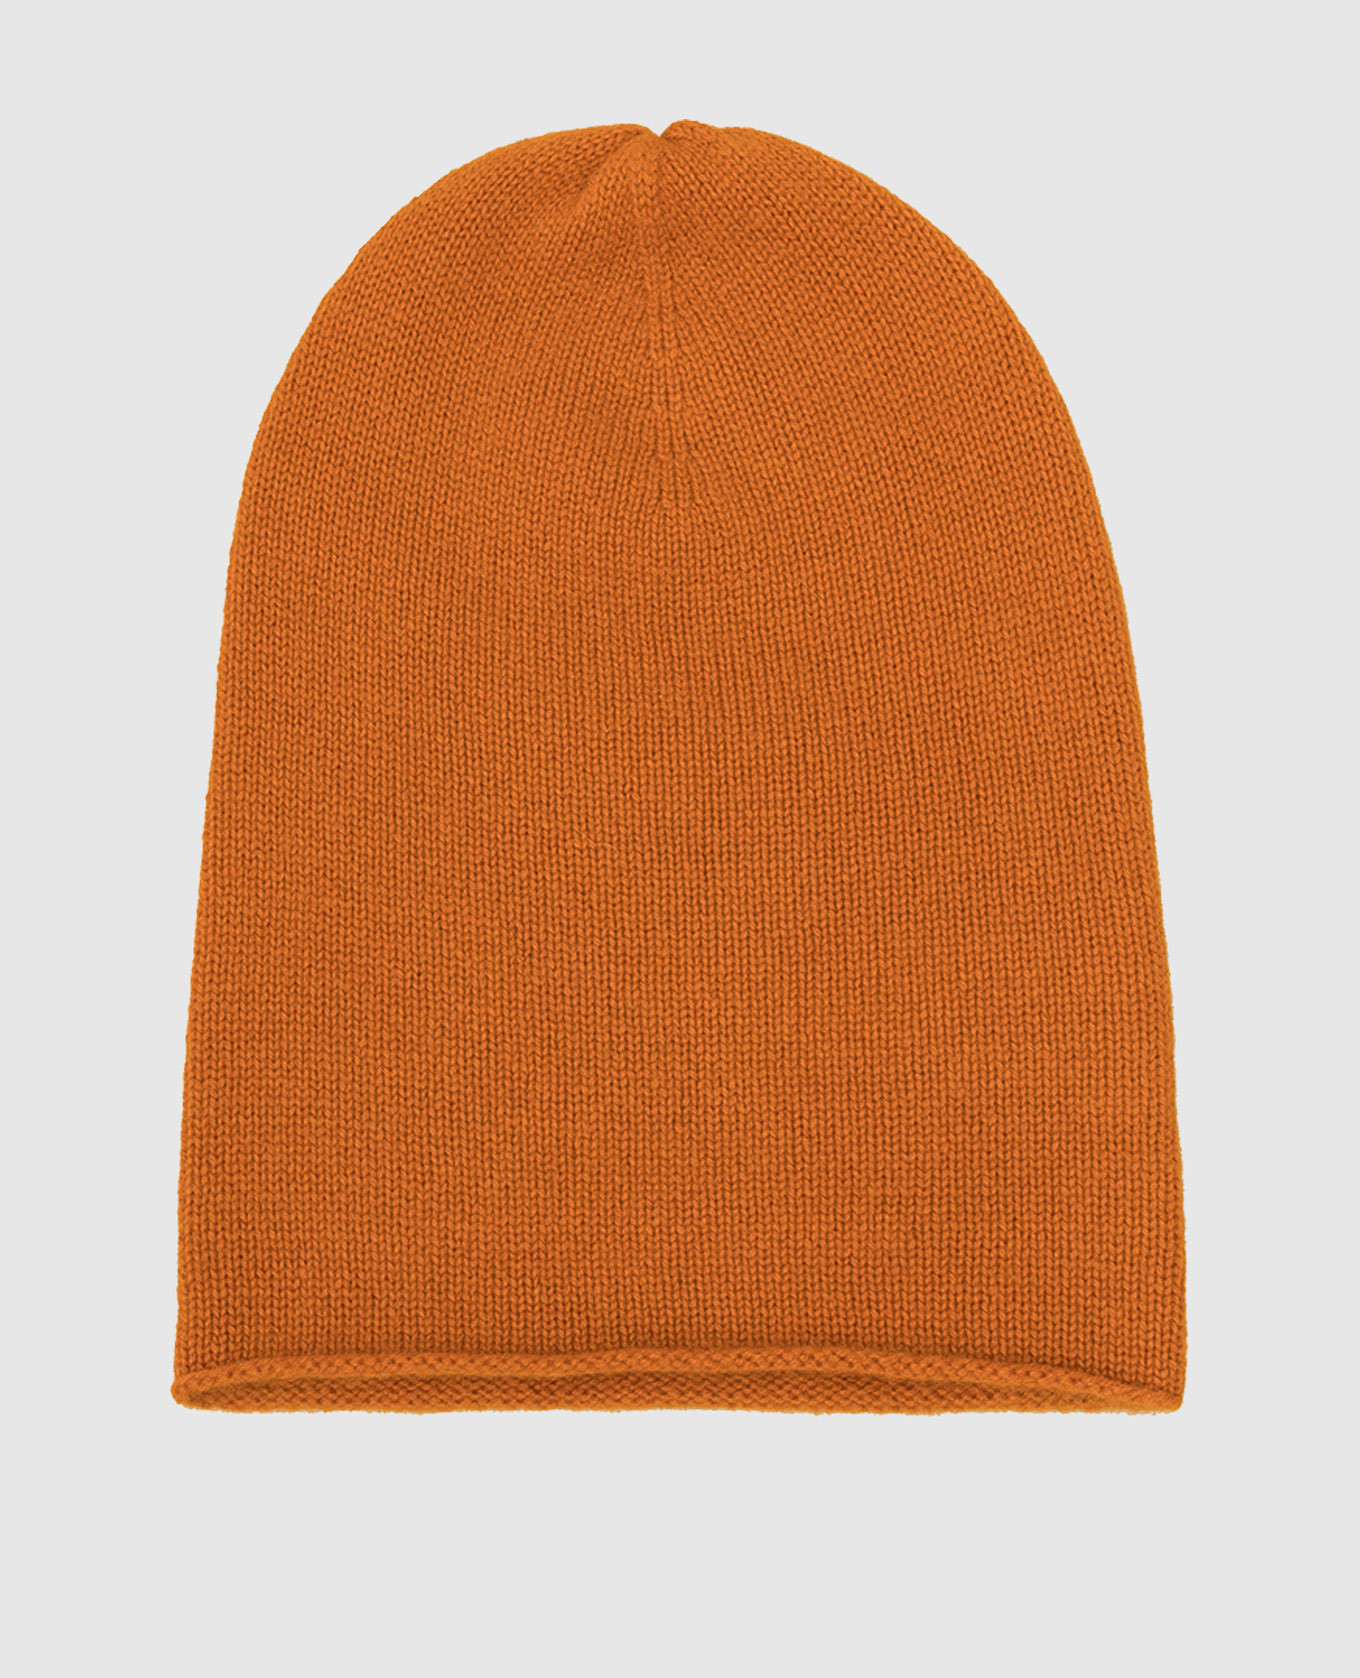 Orange cashmere hat